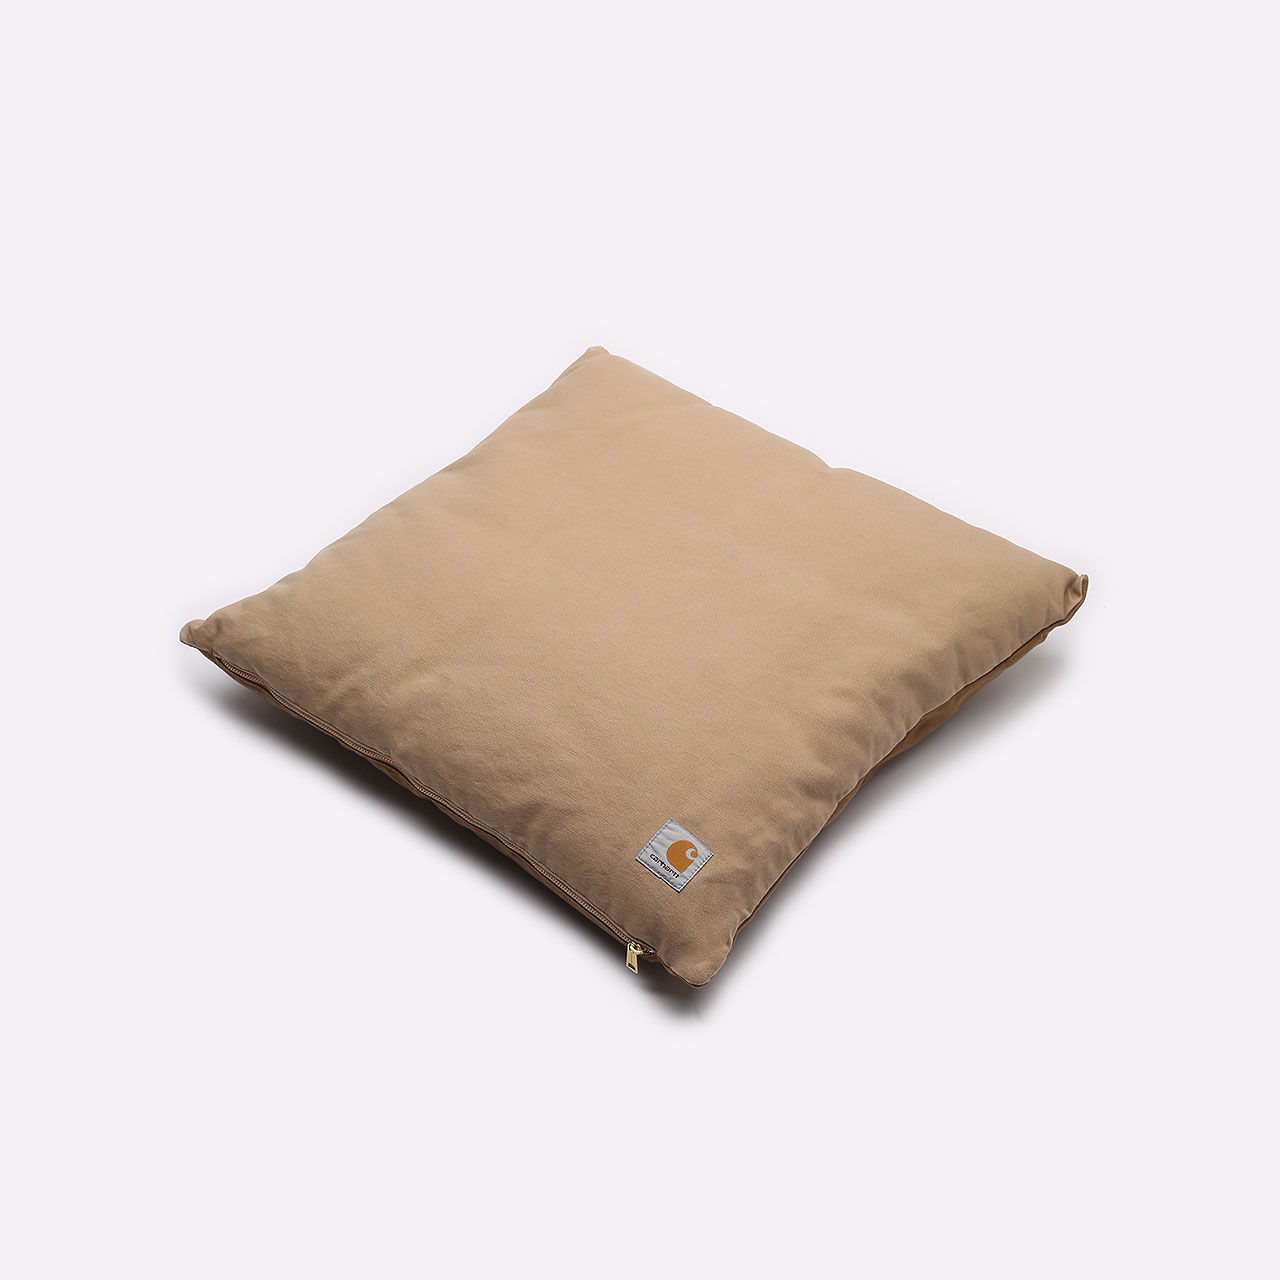  бежевая подушка Carhartt WIP Tonare Cushion I029854-brown - цена, описание, фото 1